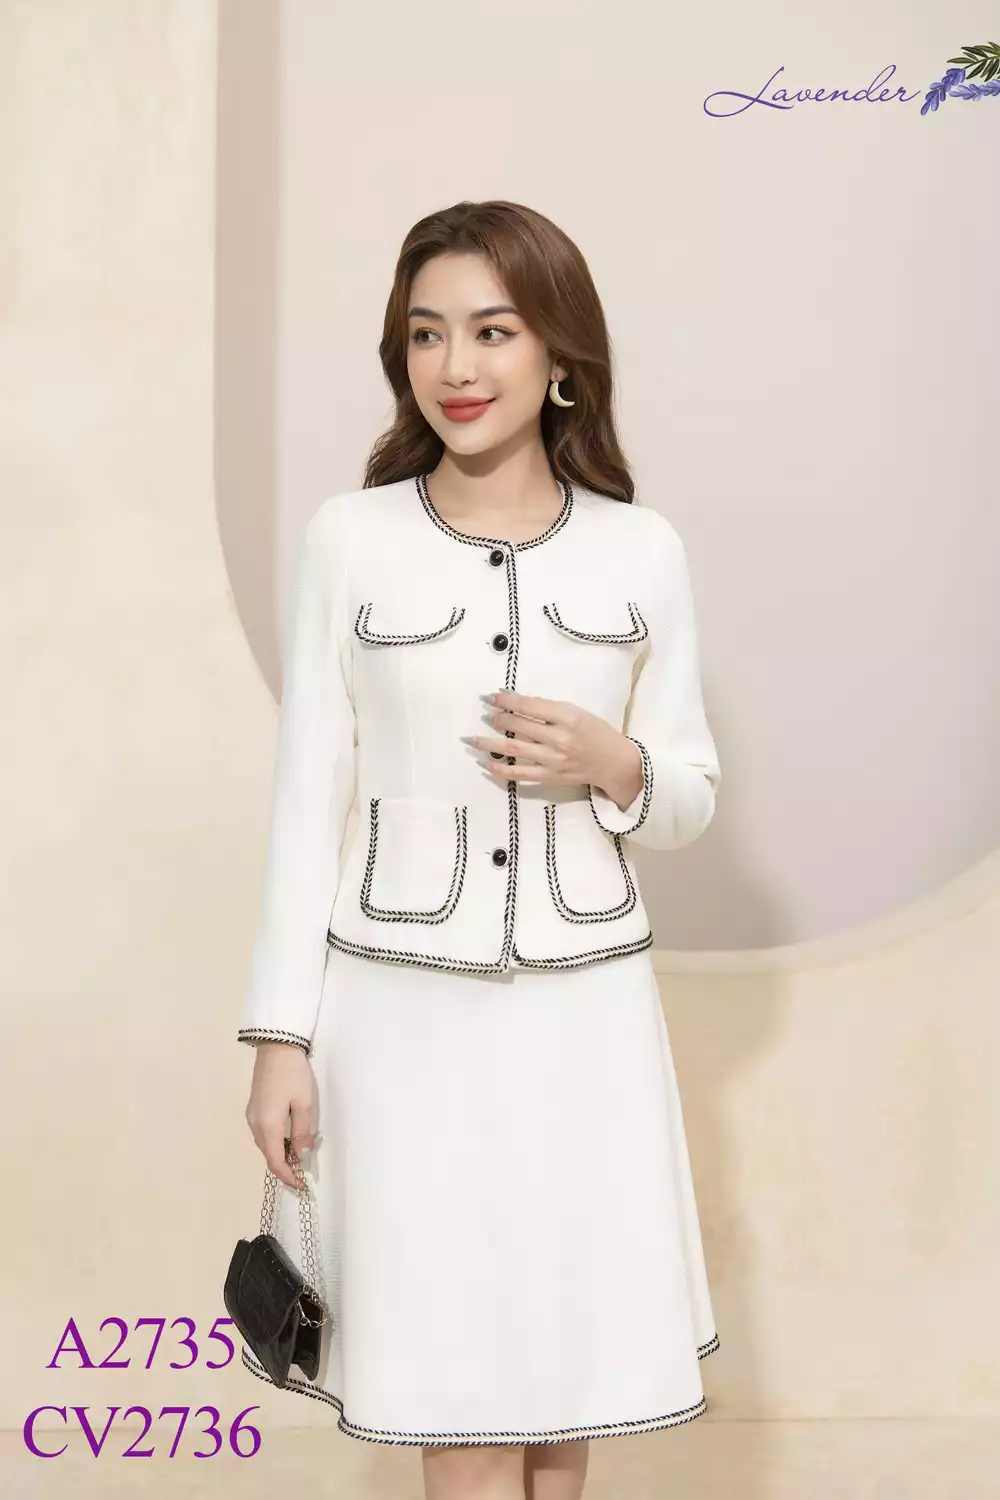 Váy Dạ tweed trắng cúc đồng Chất đẹp  December Fashion  Lazadavn